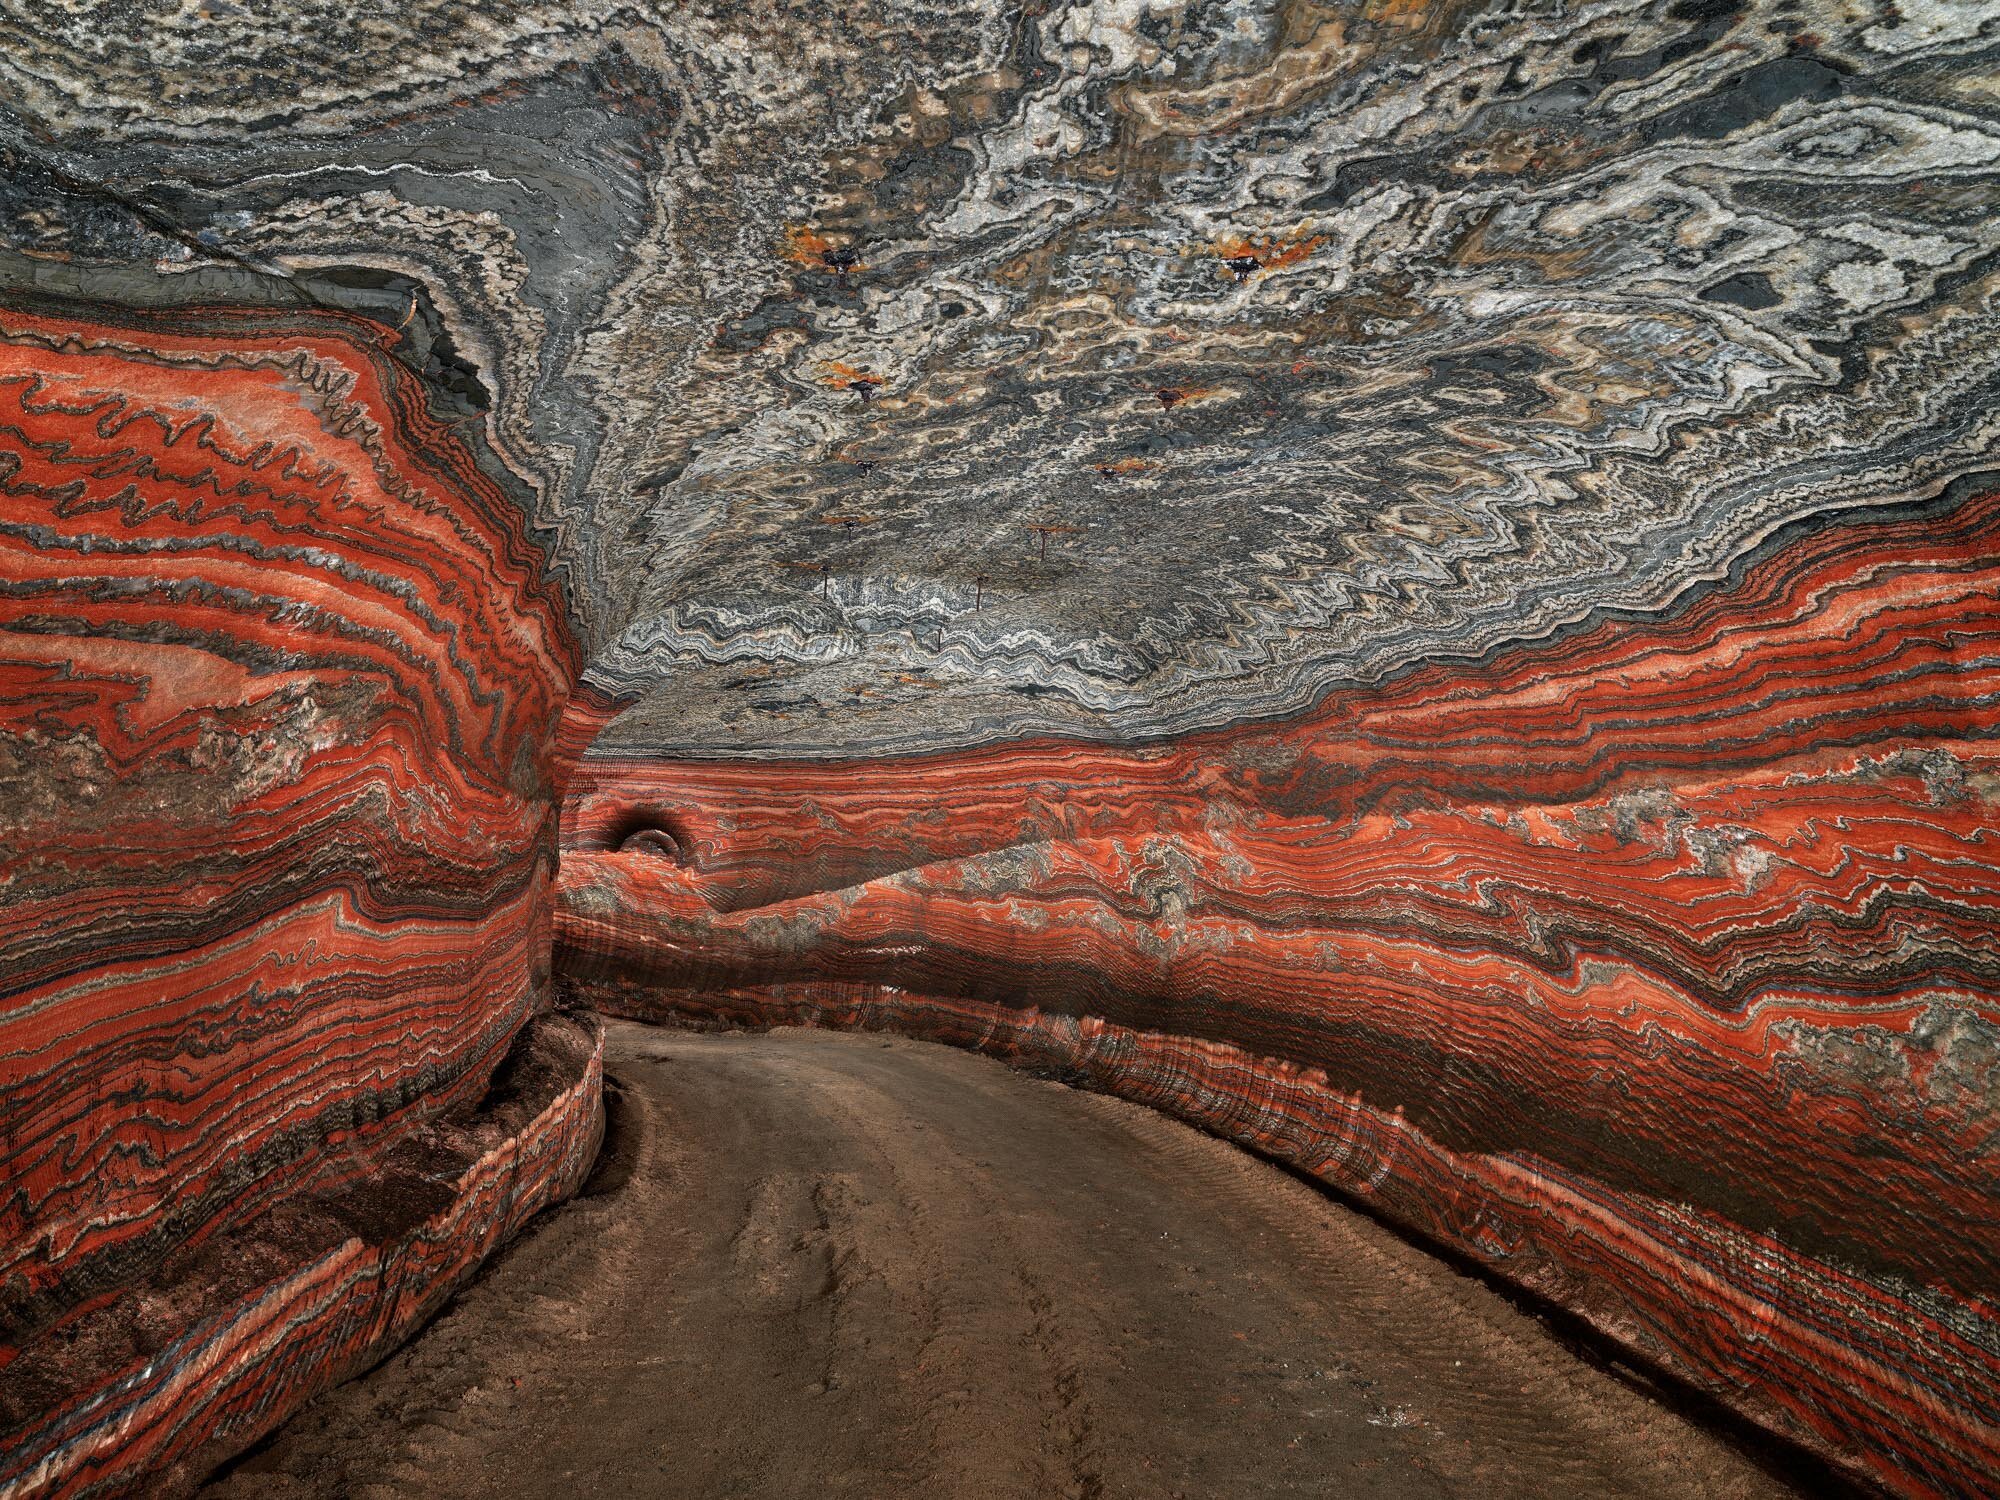 40. Uralkali Potash Mine #2, Berezniki, Russia, 2017